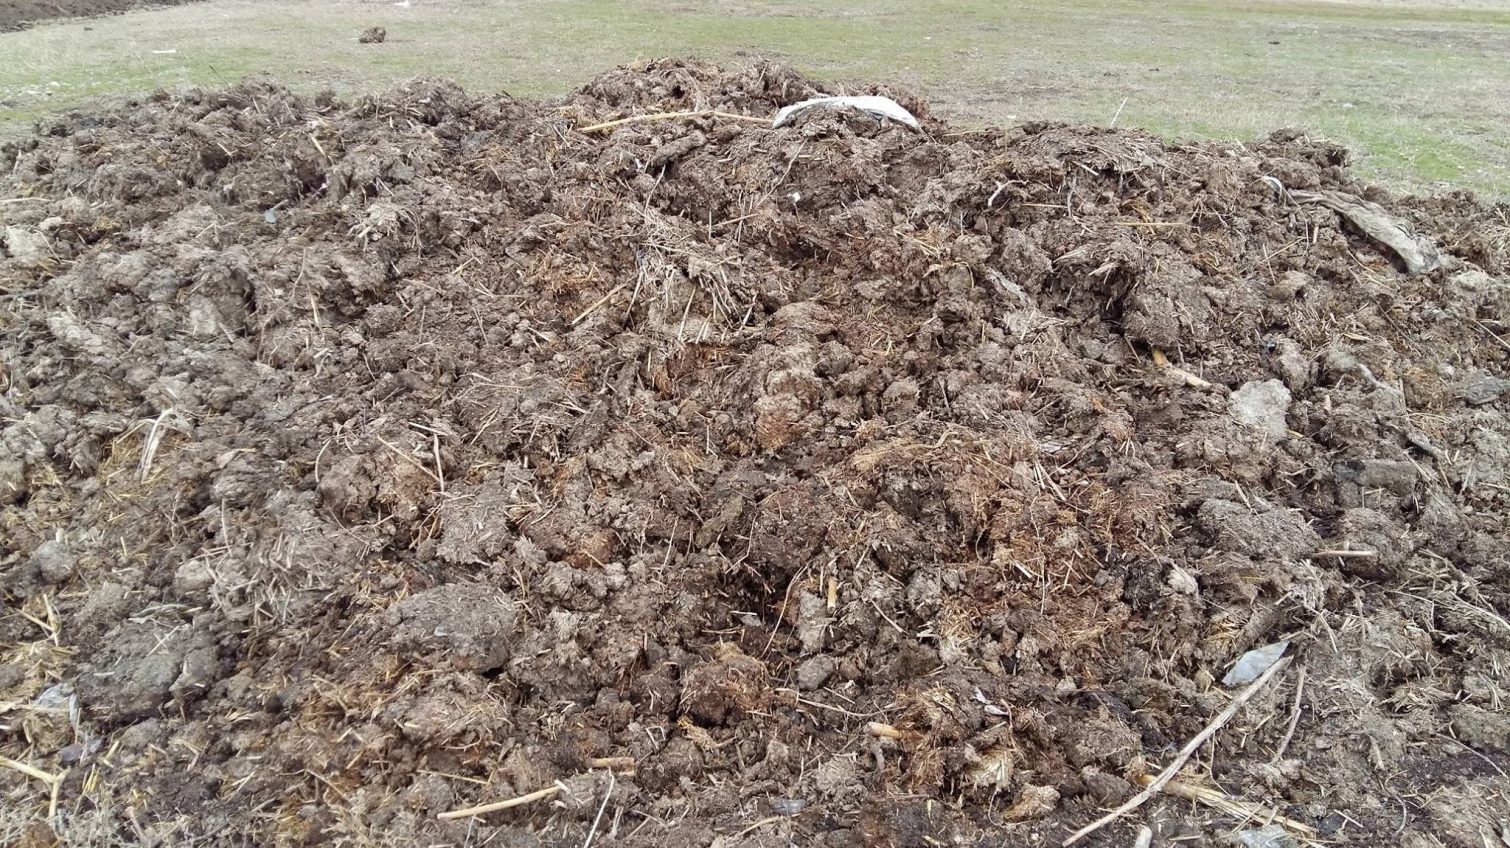 В нацпарке “Тузловские лиманы” обнаружили скотомогильник и свалку навоза (фото) «фото»